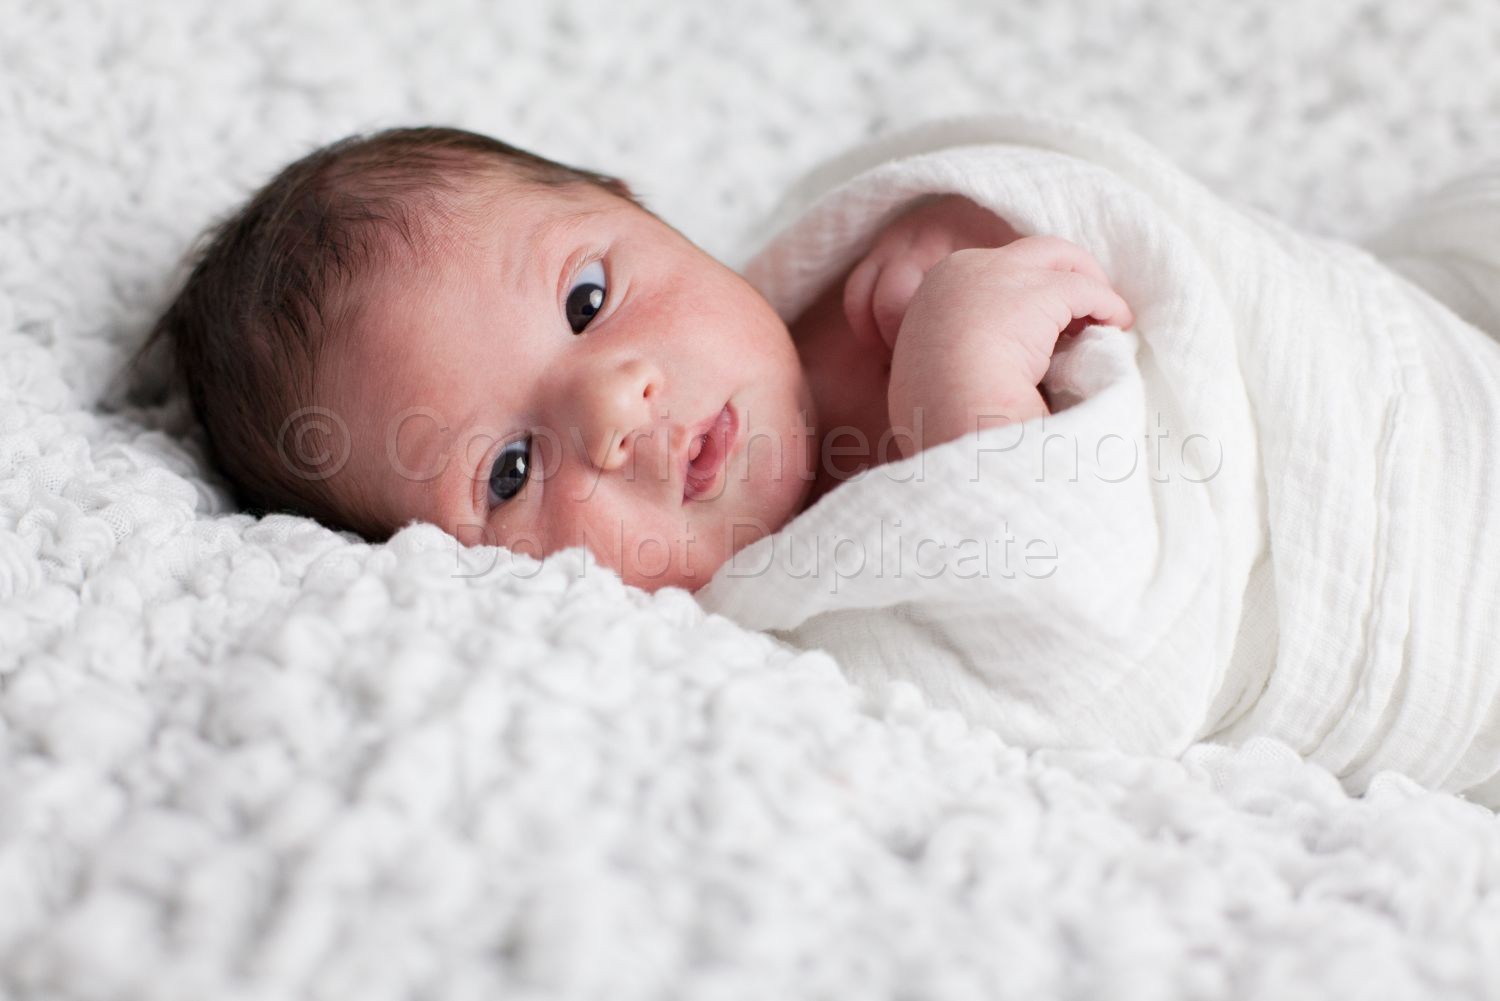 Baby Adrian | Farh-44-Edit.jpg